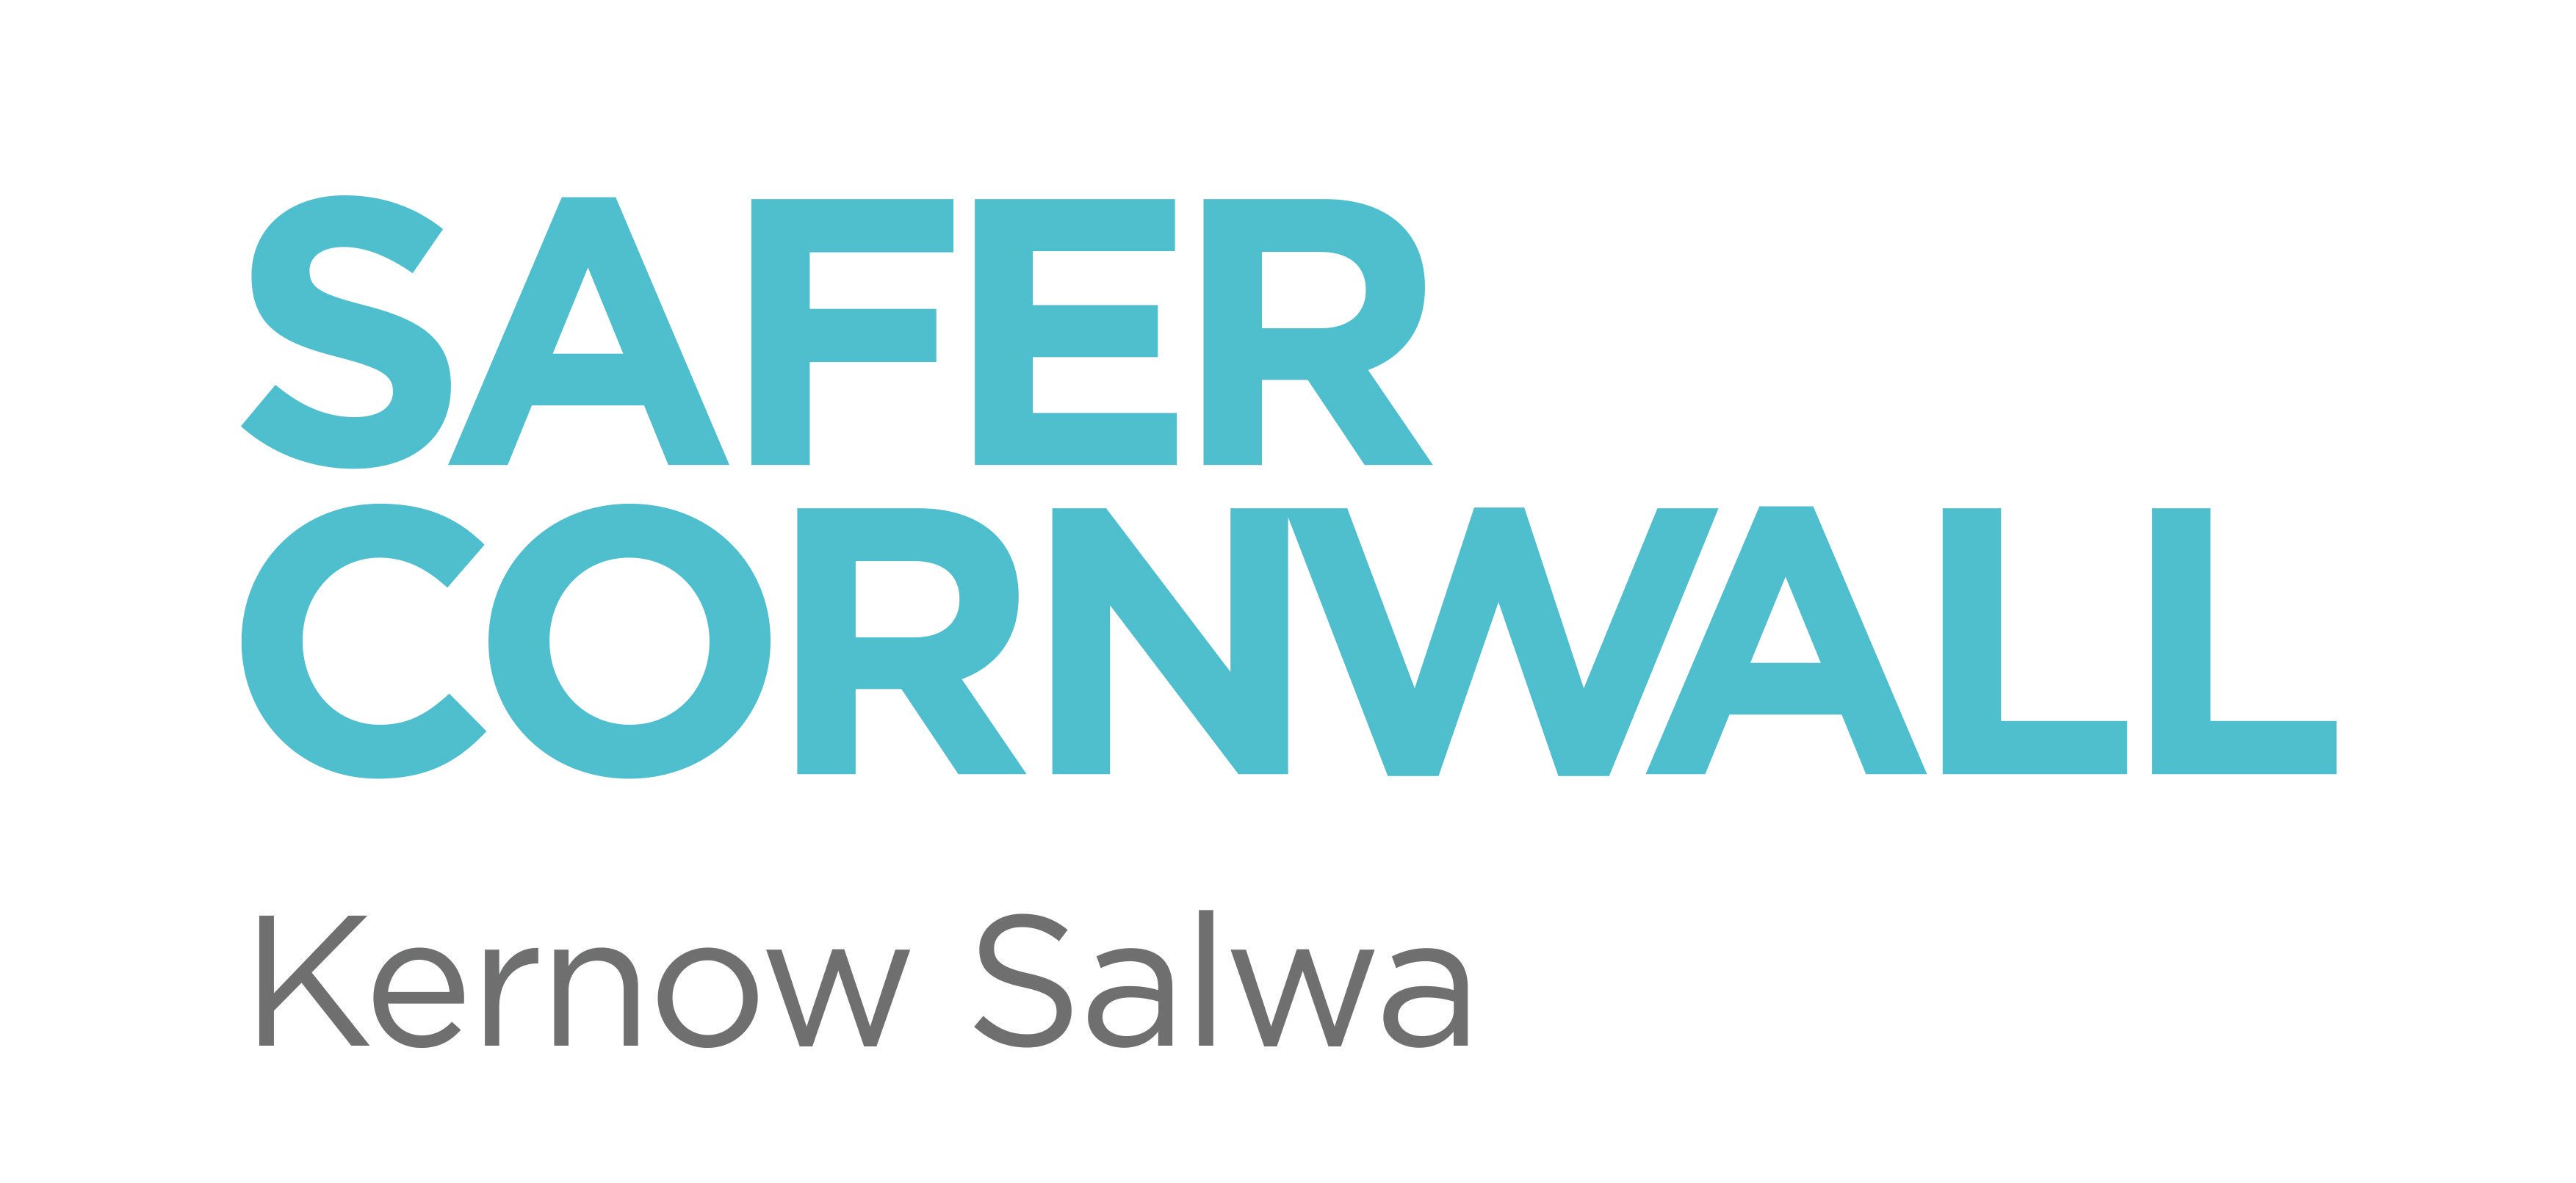 Cornwall Logo - Safer-Cornwall-Logo : Safer Cornwall